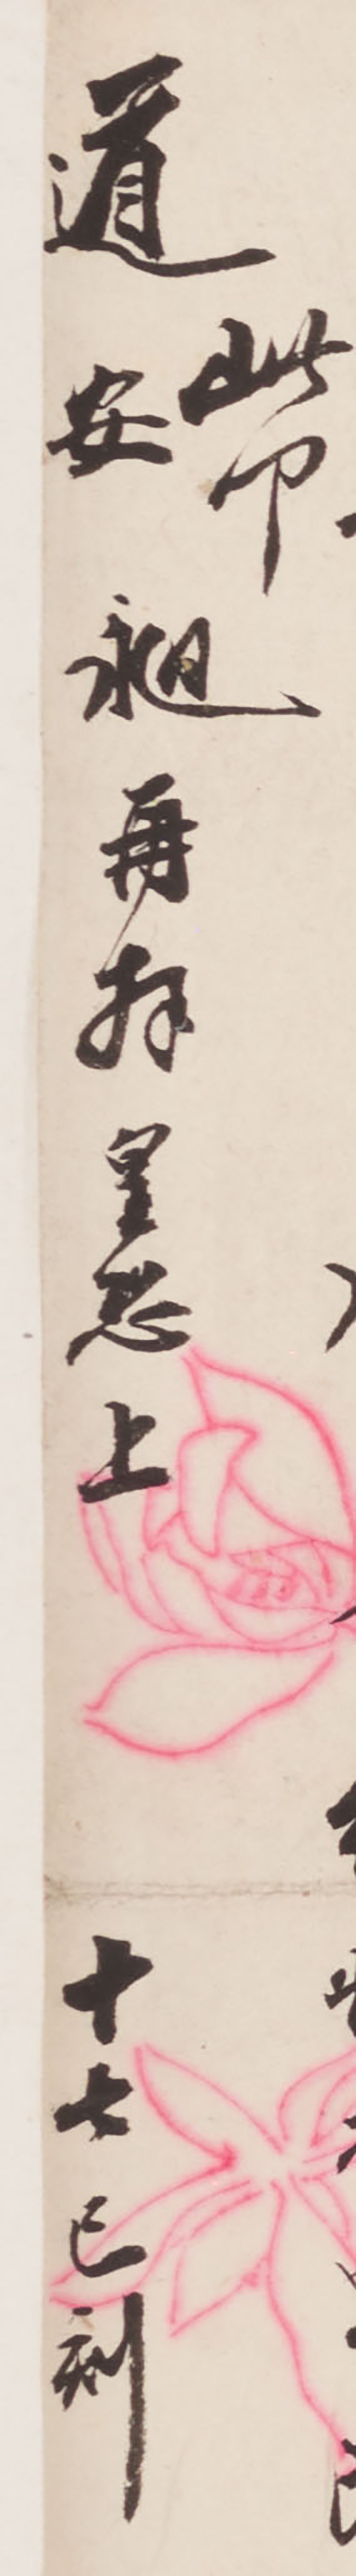 A Calligraphy Handscroll of Letters from Xu Yongyi, Xu Jingcheng, and Yuan Chang par  Various Artists